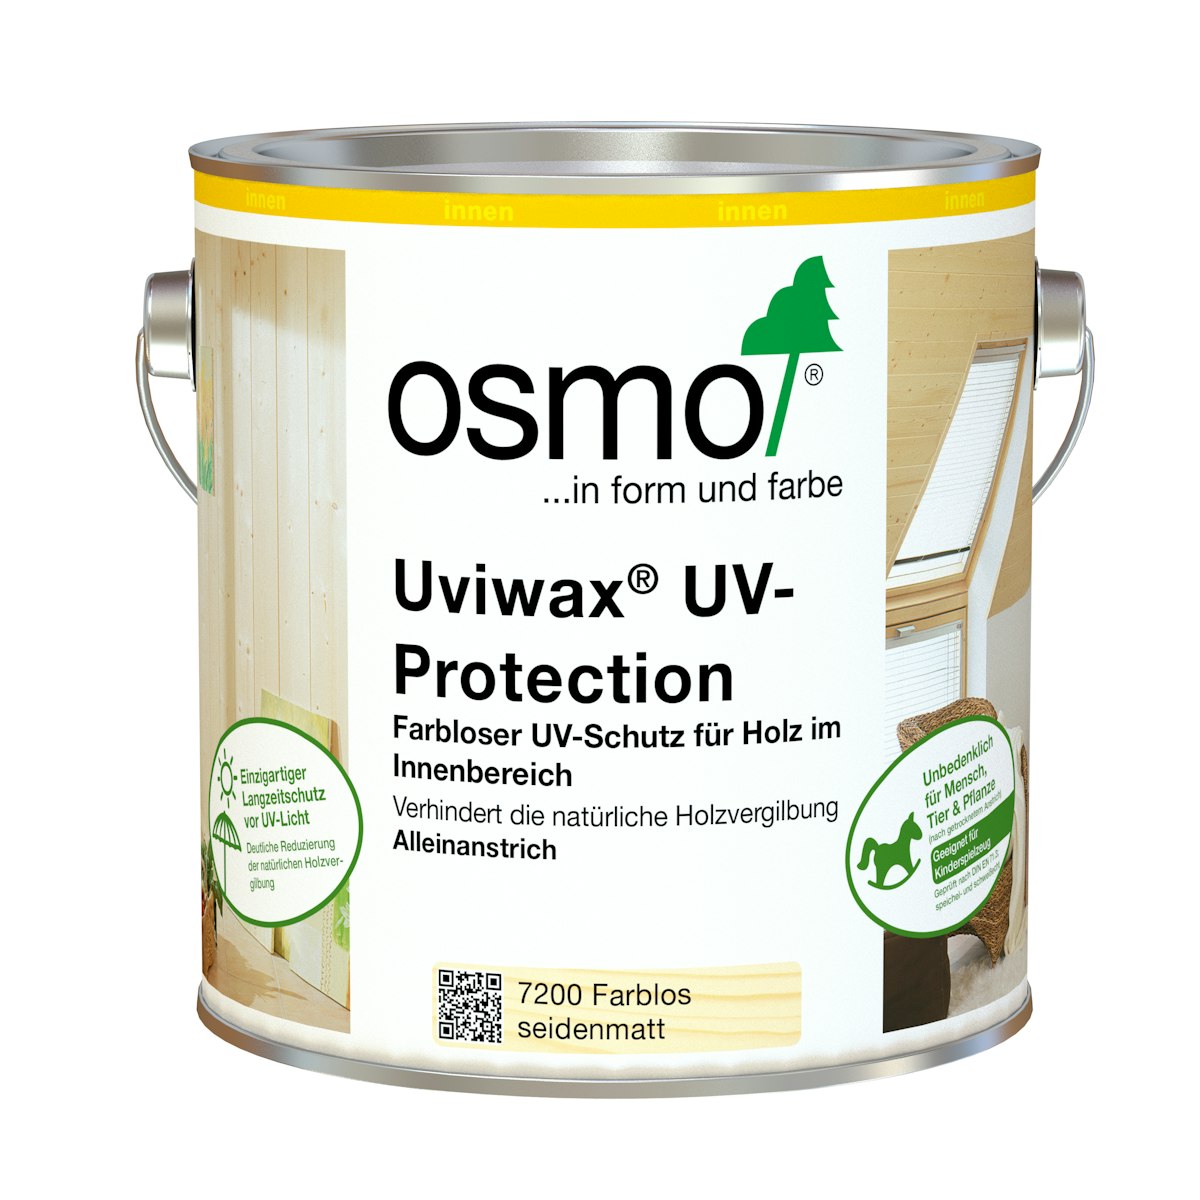 OSMO Uviwax® UV-Protection -7200 Farblos seidenmatt-2,5 Liter von Osmo Farben & Zubehör